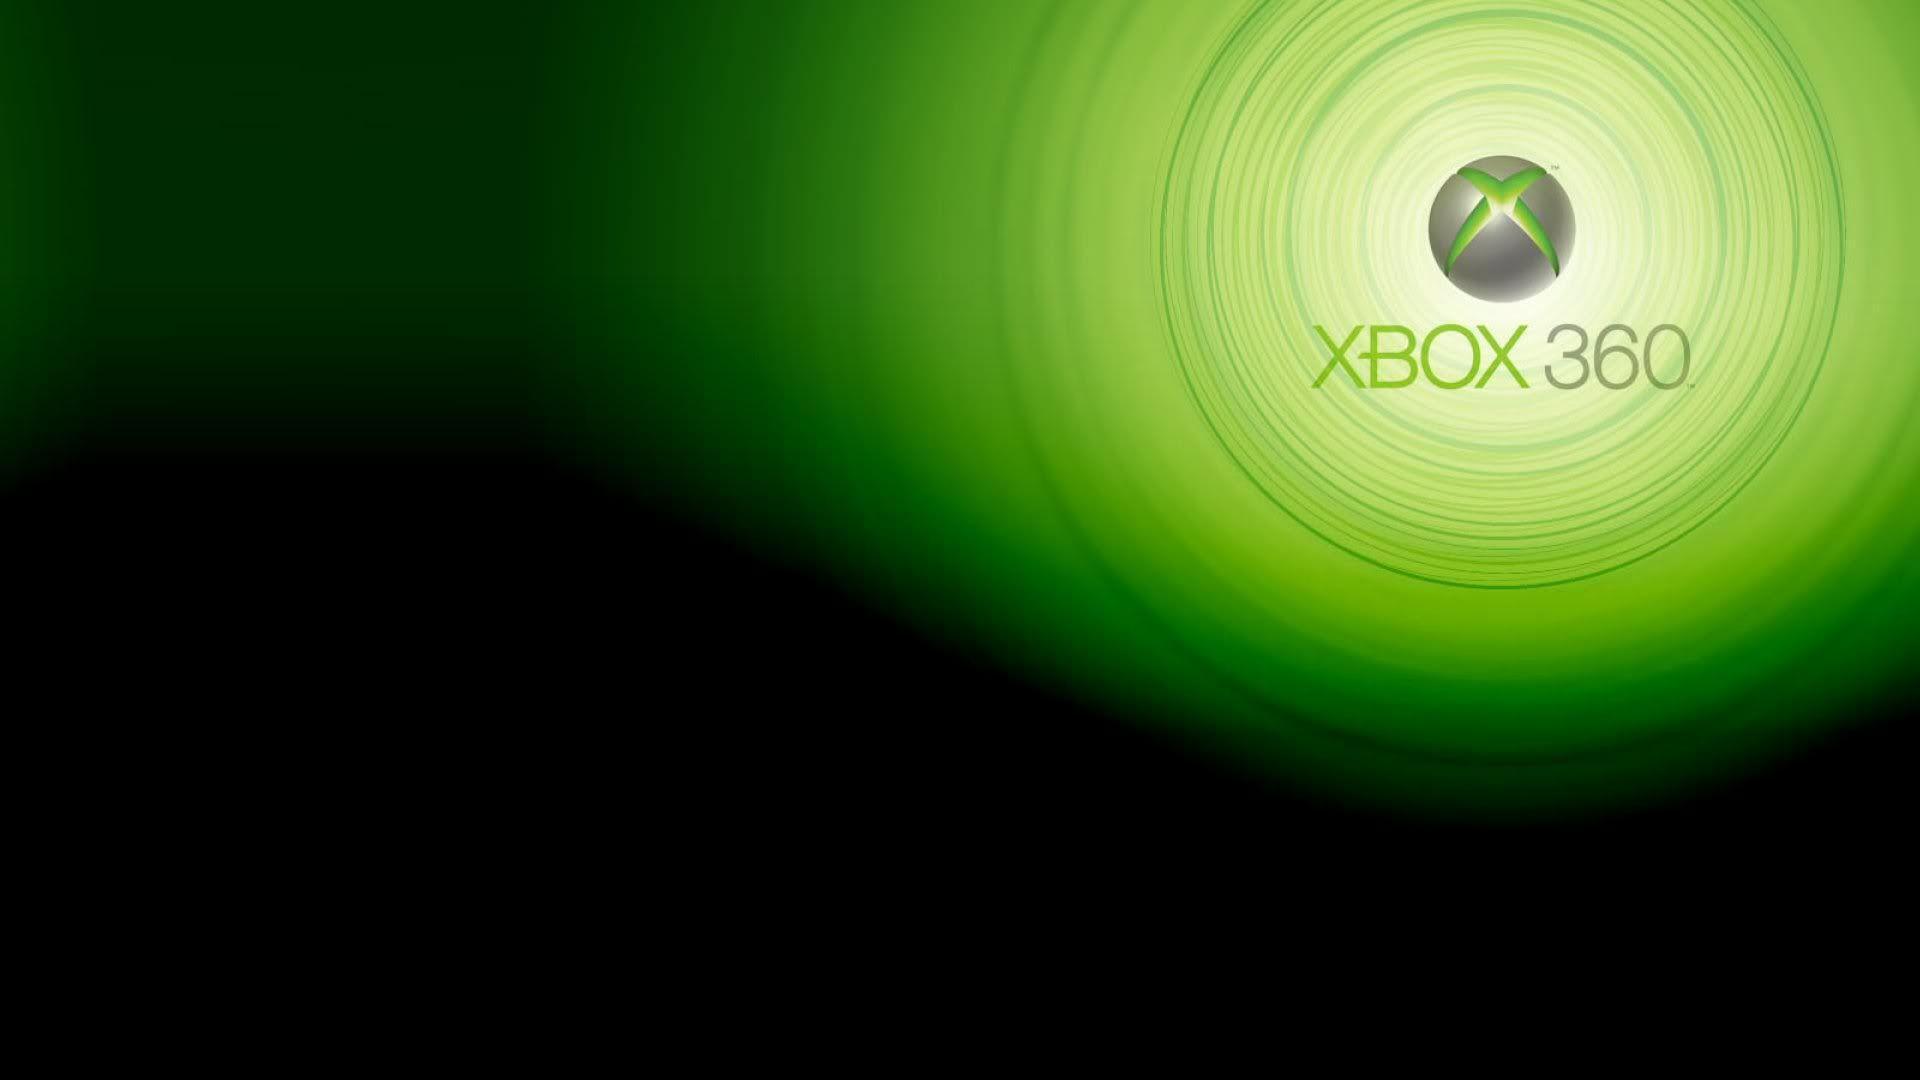 Xbox Wallpaper, Xbox Picture. Original HD Quality